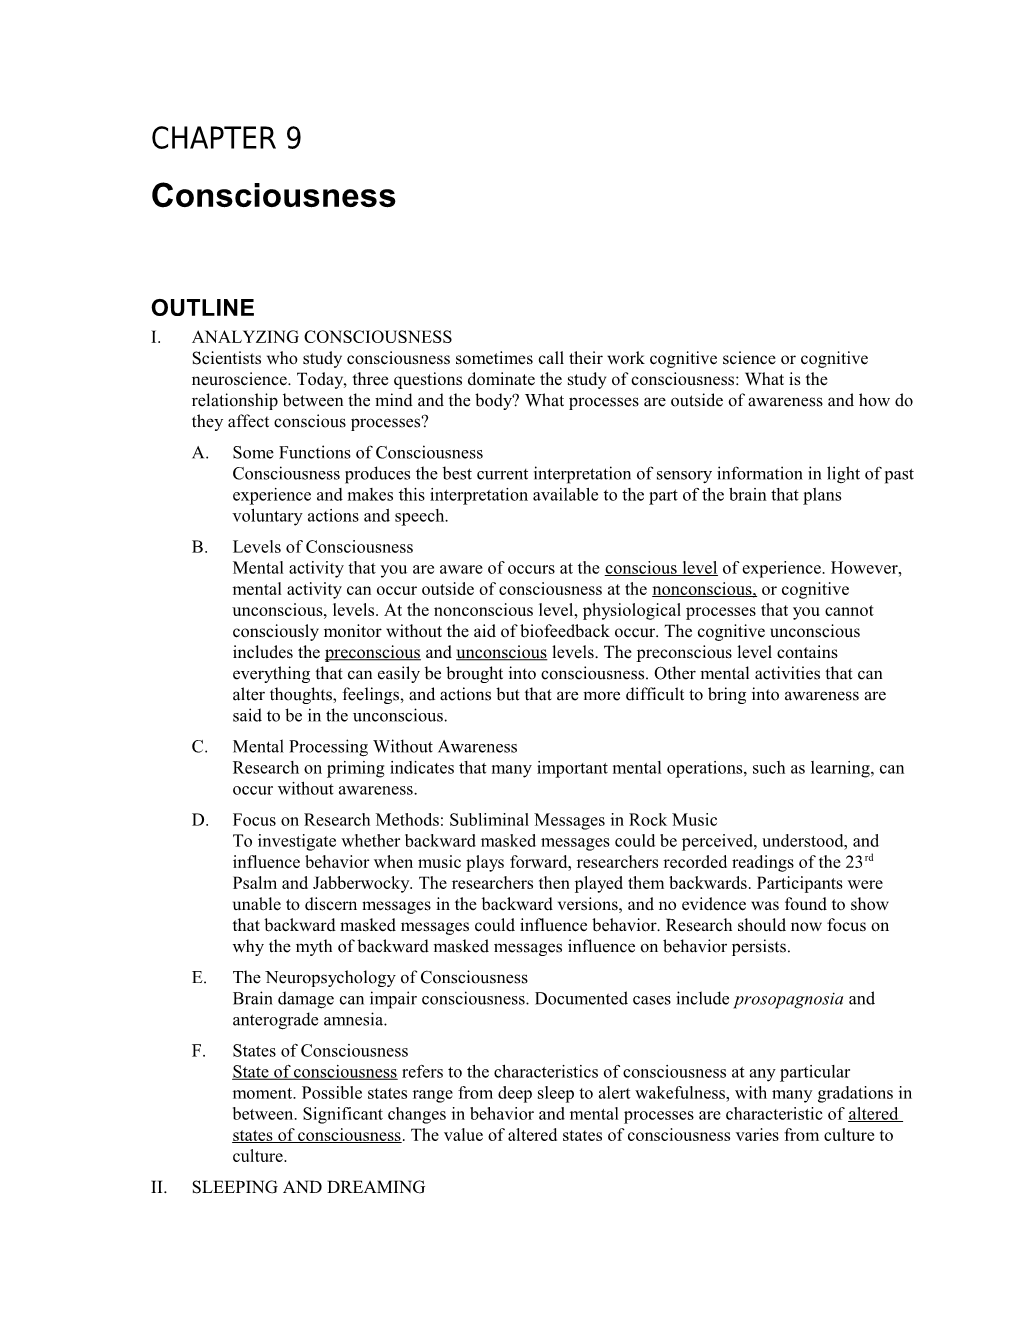 I.Analyzing Consciousness